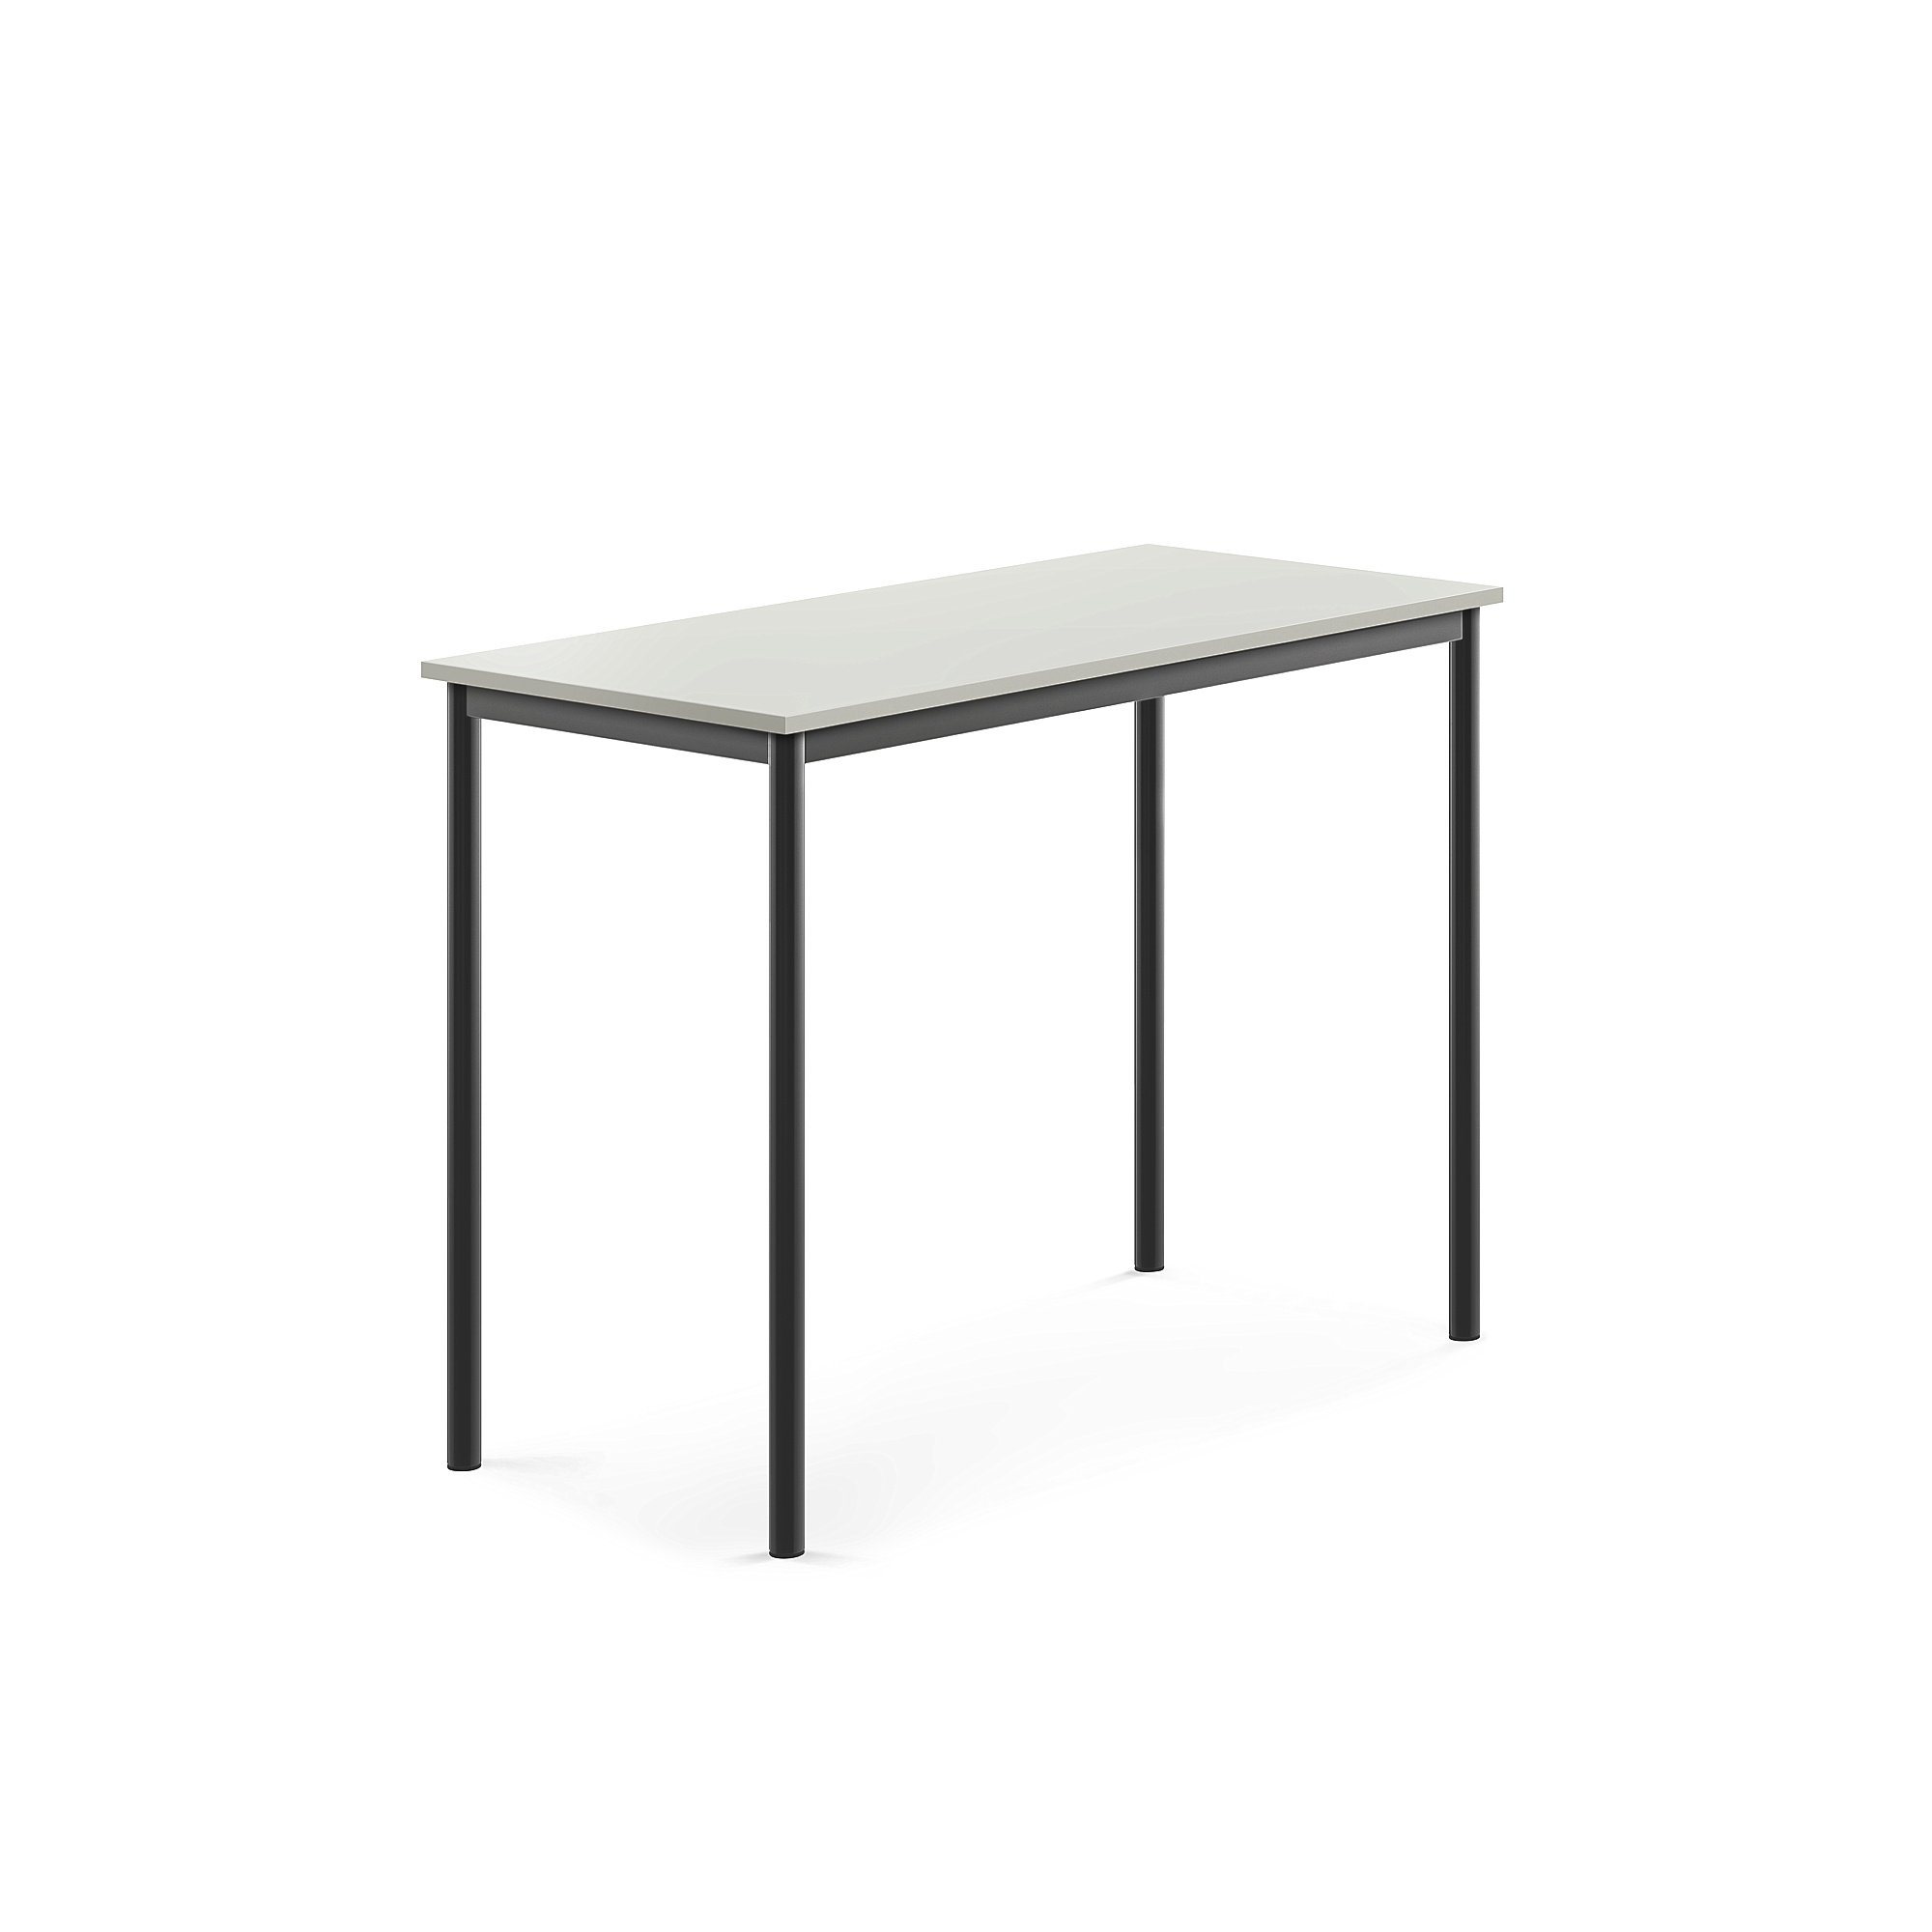 Stůl BORÅS, 1200x600x900 mm, antracitově šedé nohy, HPL deska, šedá